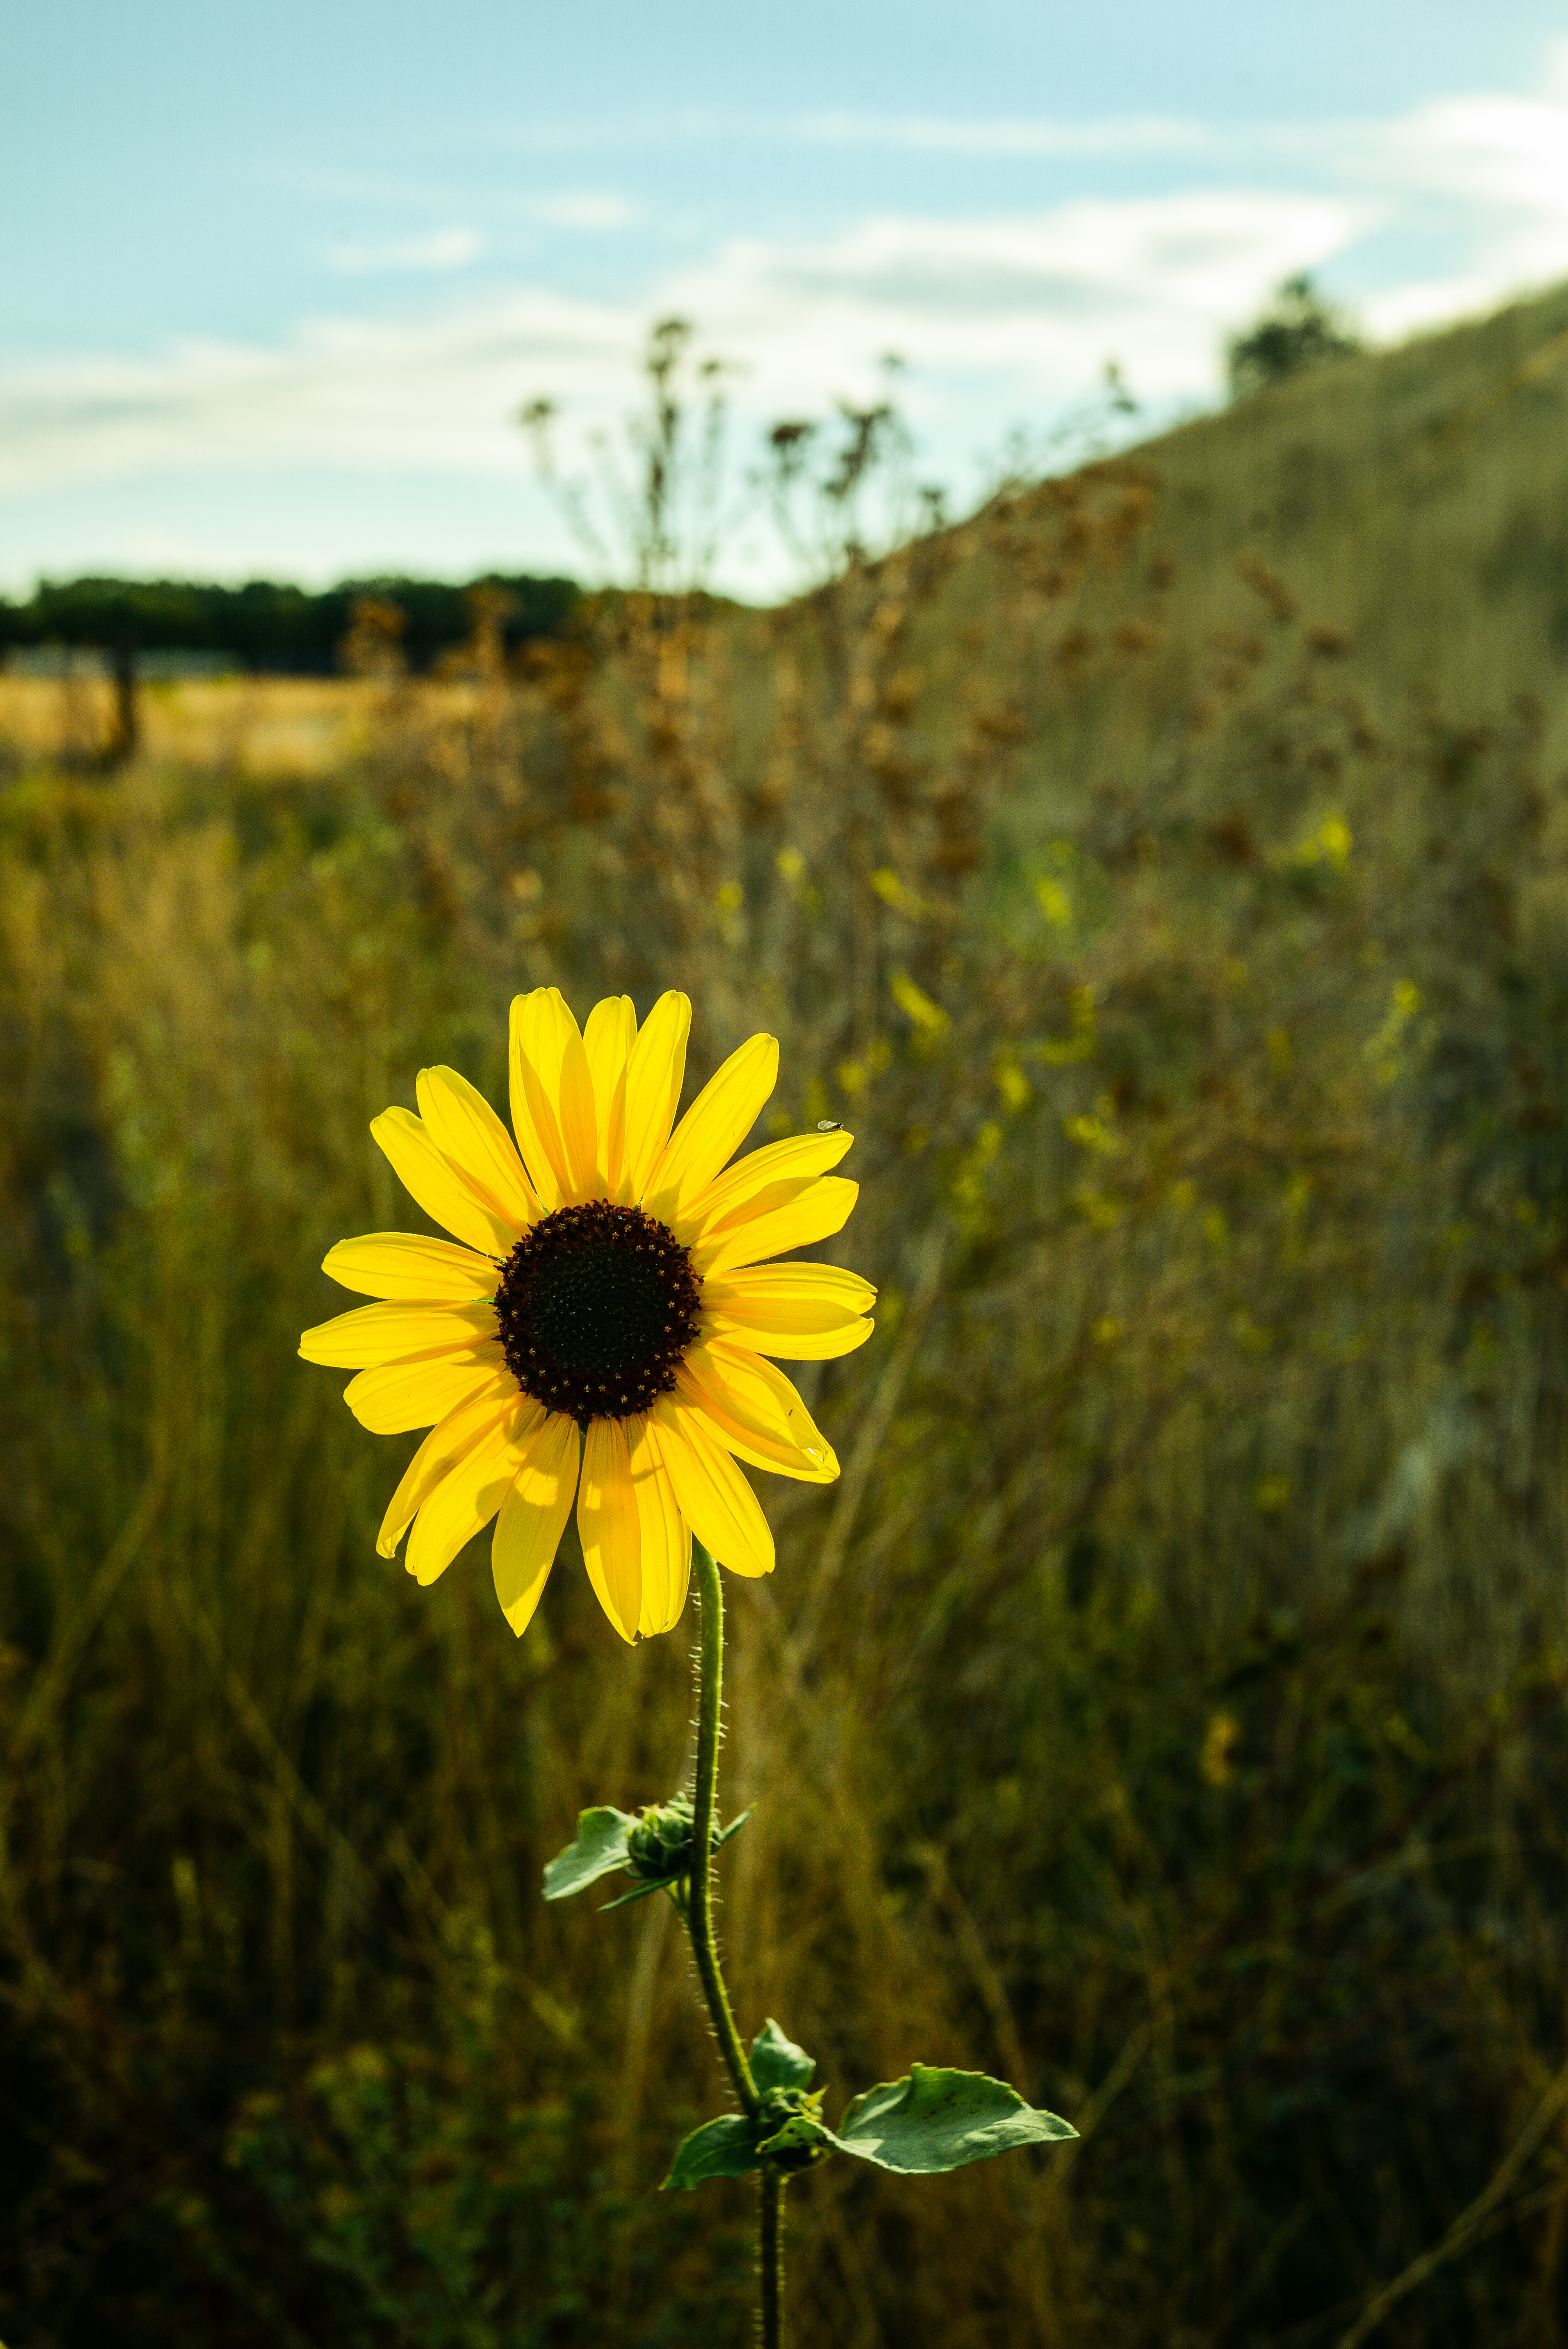 151006-sunflower-wild-grassy-hills.jpg